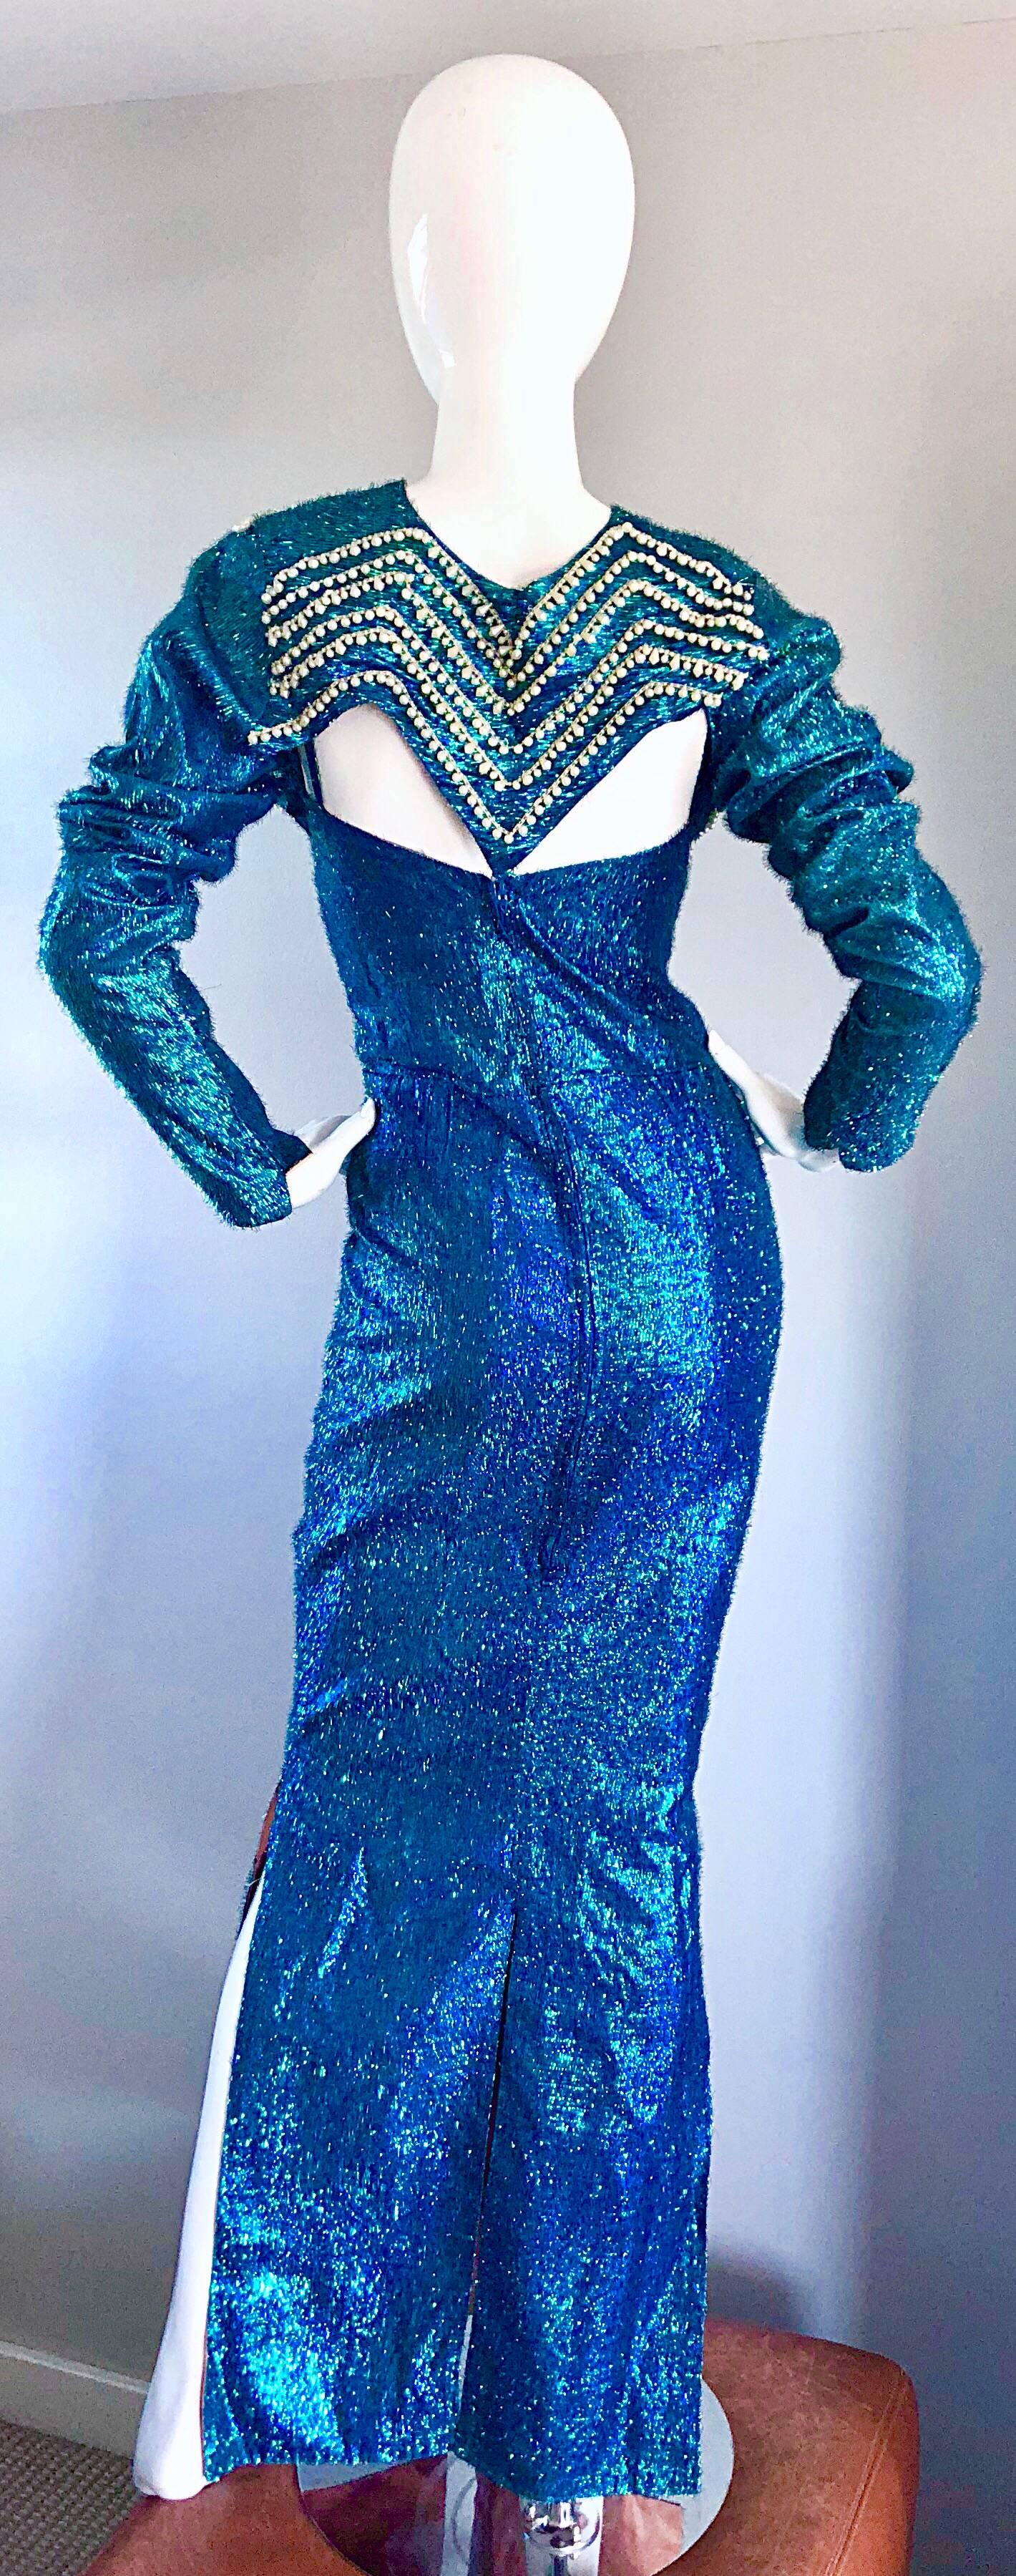 Robe sirène sexy en lurex de soie bleu céruléen et veste boléro des années 50, à collectionner ! Cette robe longue présente un corsage ajusté et un ourlet évasé avec trois fentes à l'ourlet. Fermeture éclair métallique cachée dans le dos avec  